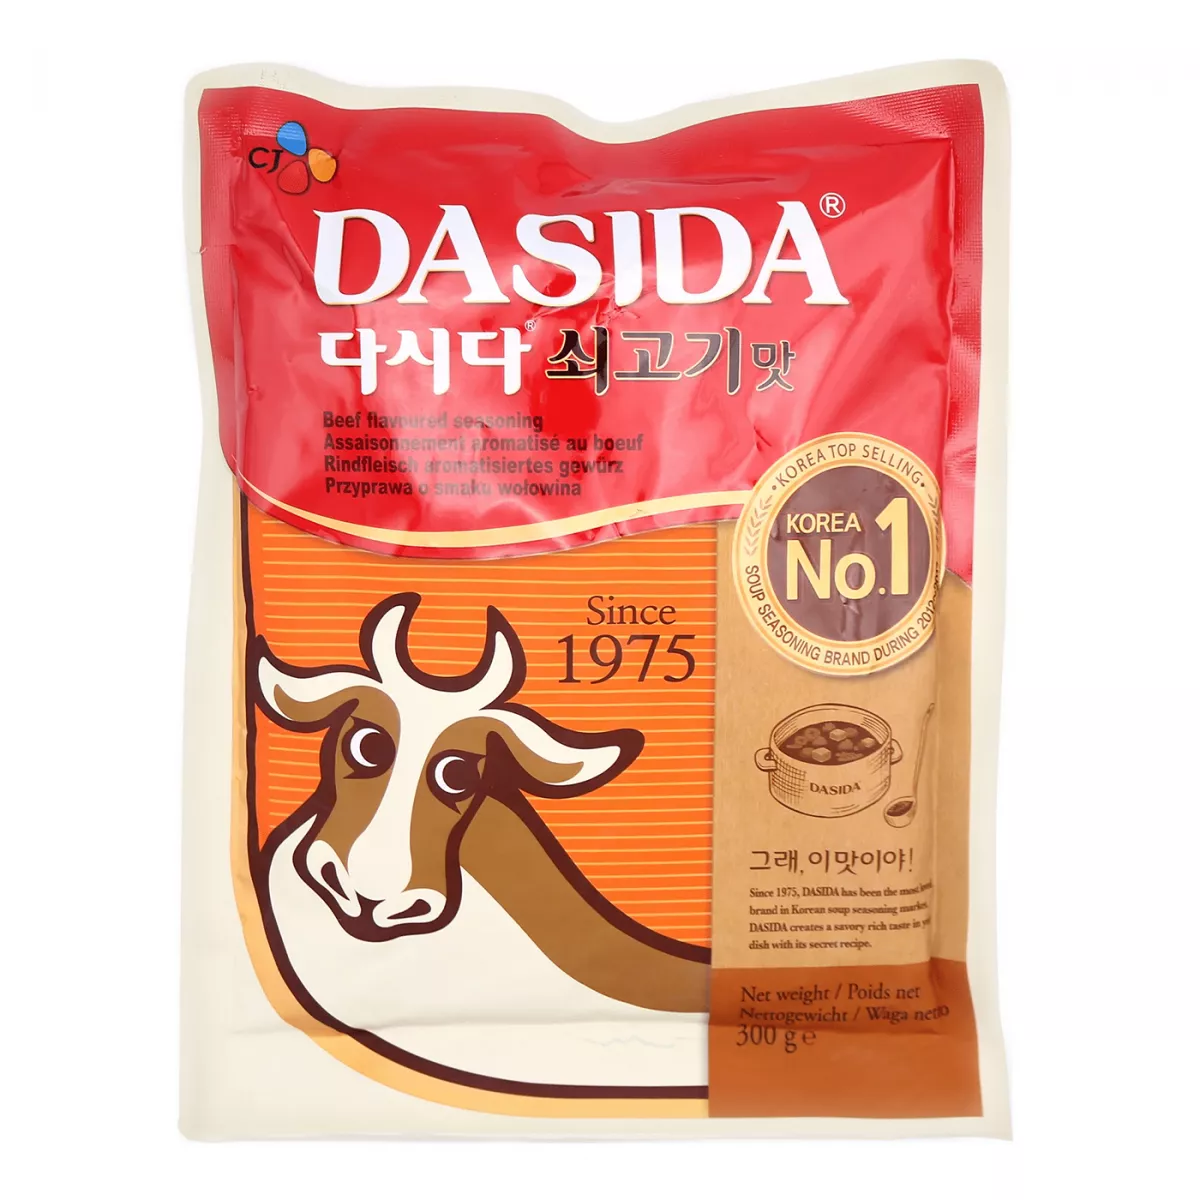 Condiment gust vita Dashida CJ 300g, [],asianfood.ro